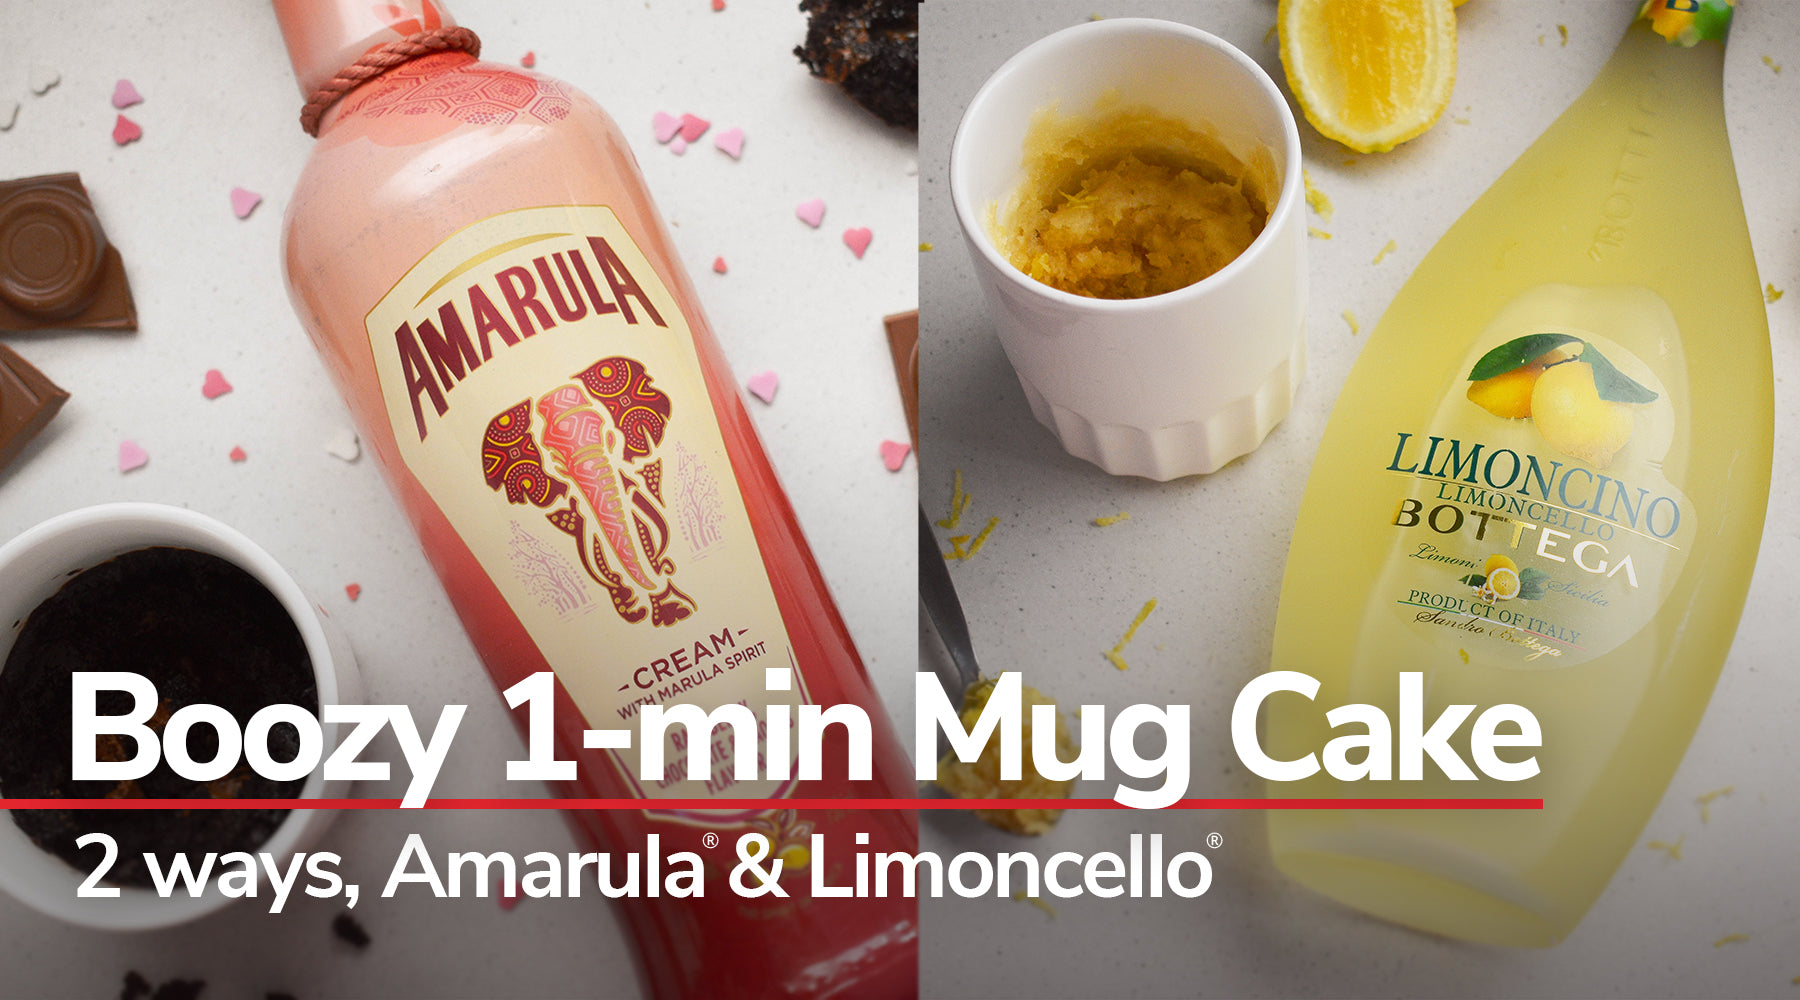 1-min Mug Cake in Amarula Raspberry Chocolate & African Baobab and Lim